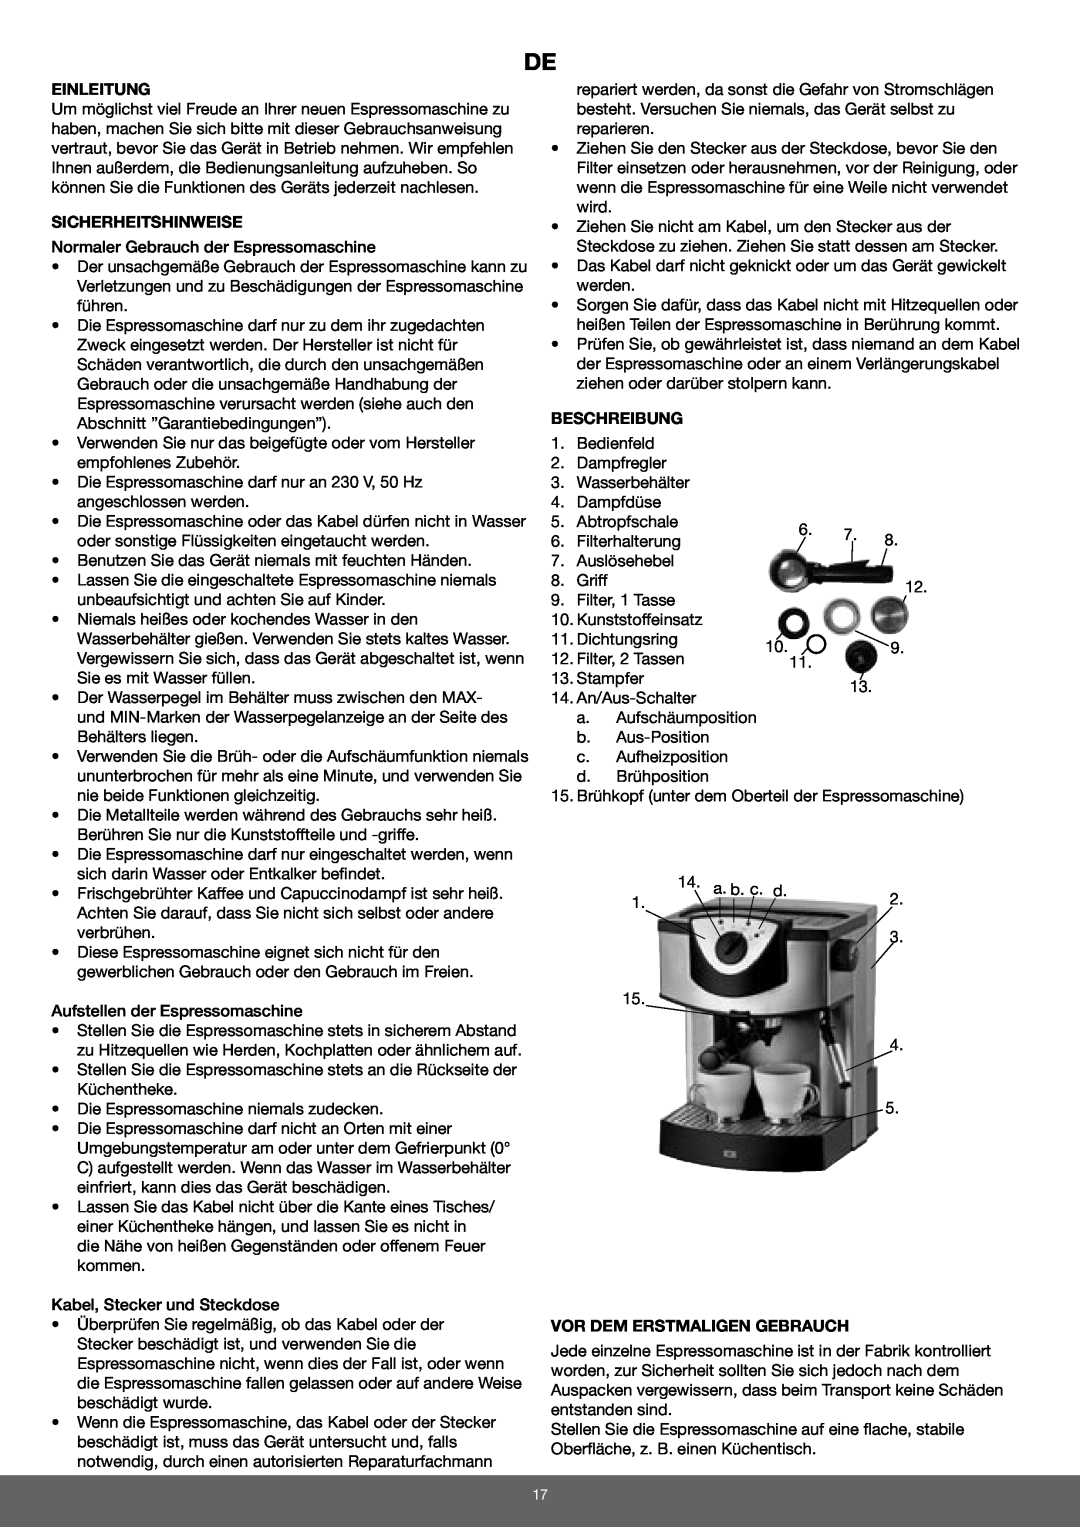 Melissa 645-079 manual Einleitung, Sicherheitshinweise, Beschreibung, Vor Dem Erstmaligen Gebrauch 